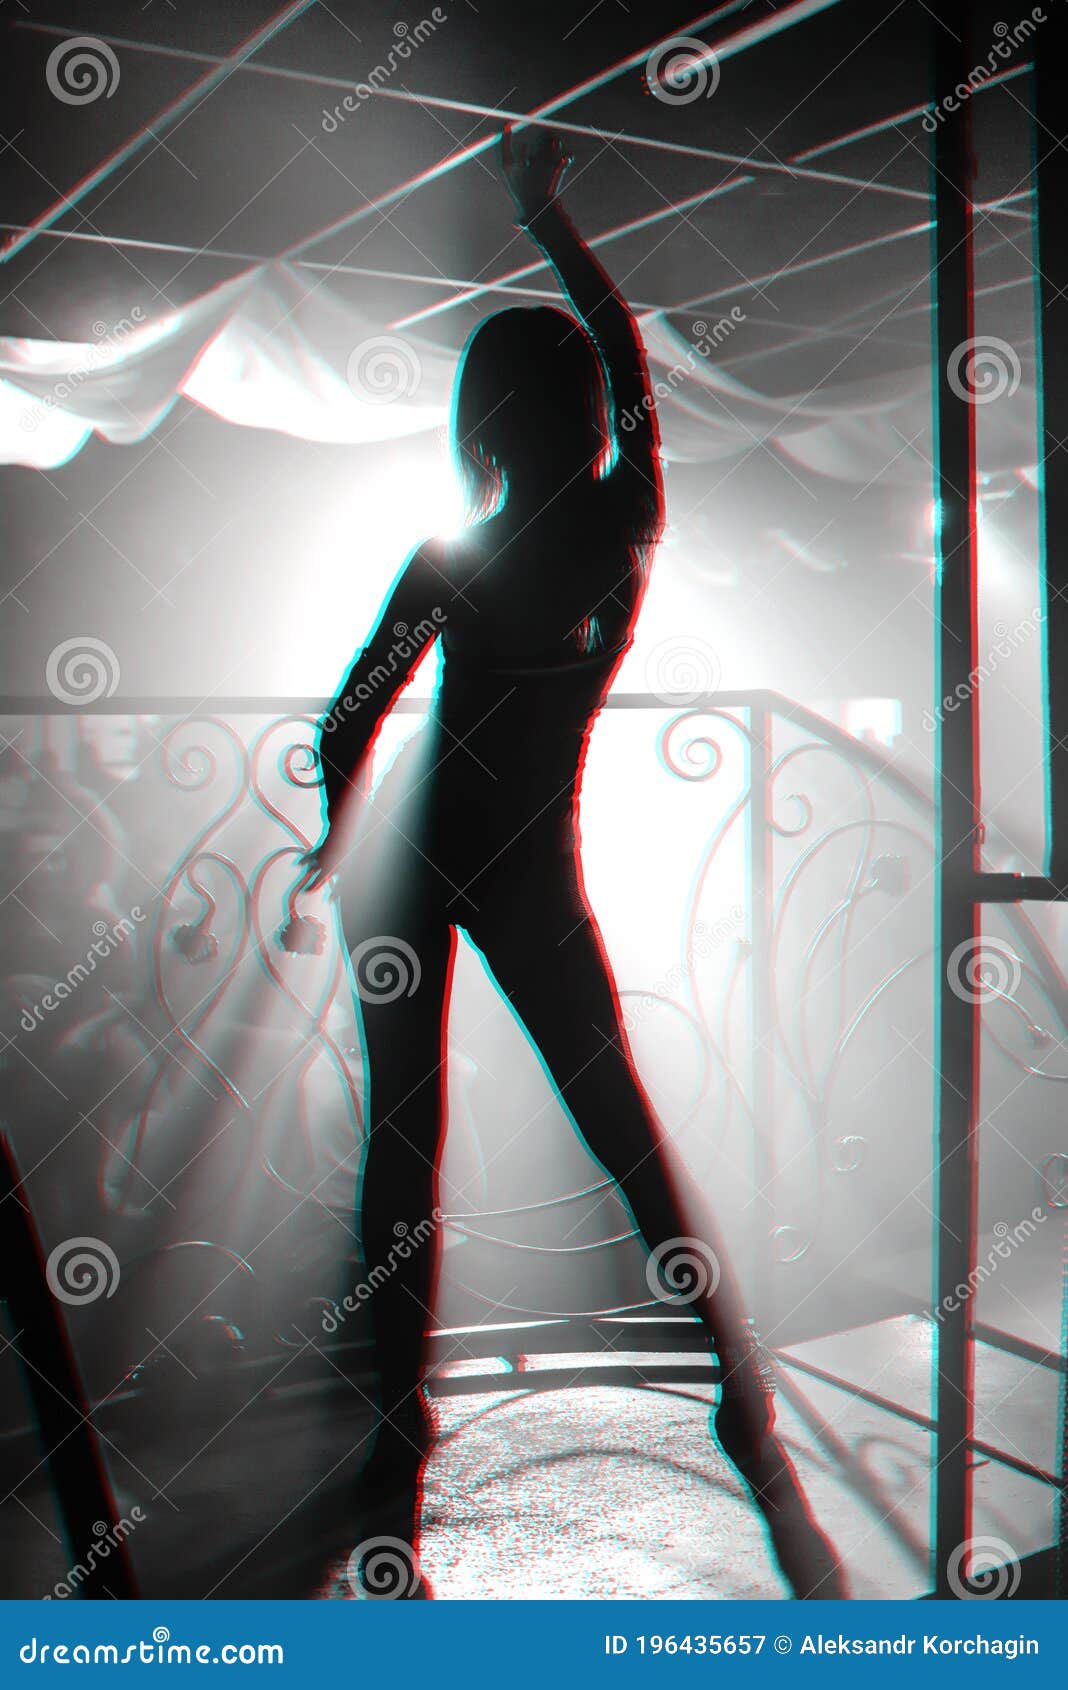 麦迪逊啤酒在多伦多的舞台上展示她纤细的腿和乳房 (25 相片) - 裸体名人